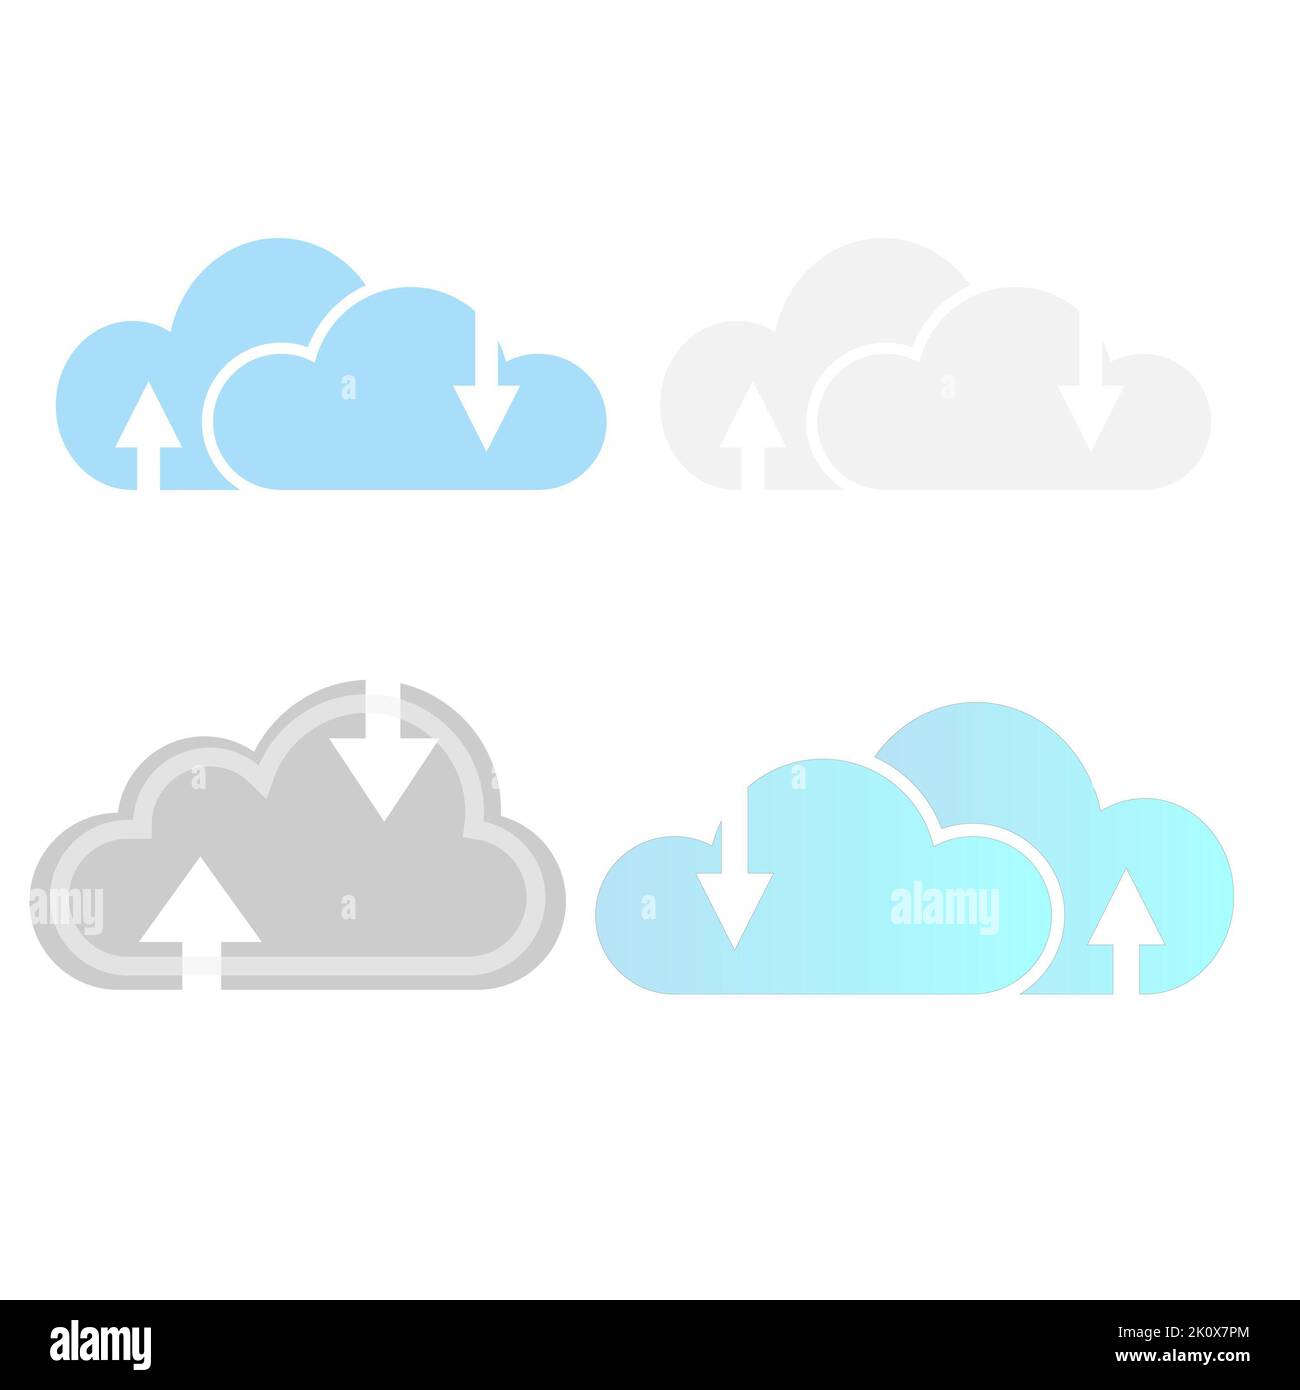 Icone relative a cloud computing, cloud informatico e hosting cloud. Set di icone di archiviazione cloud e vettore di rete. Foto Stock